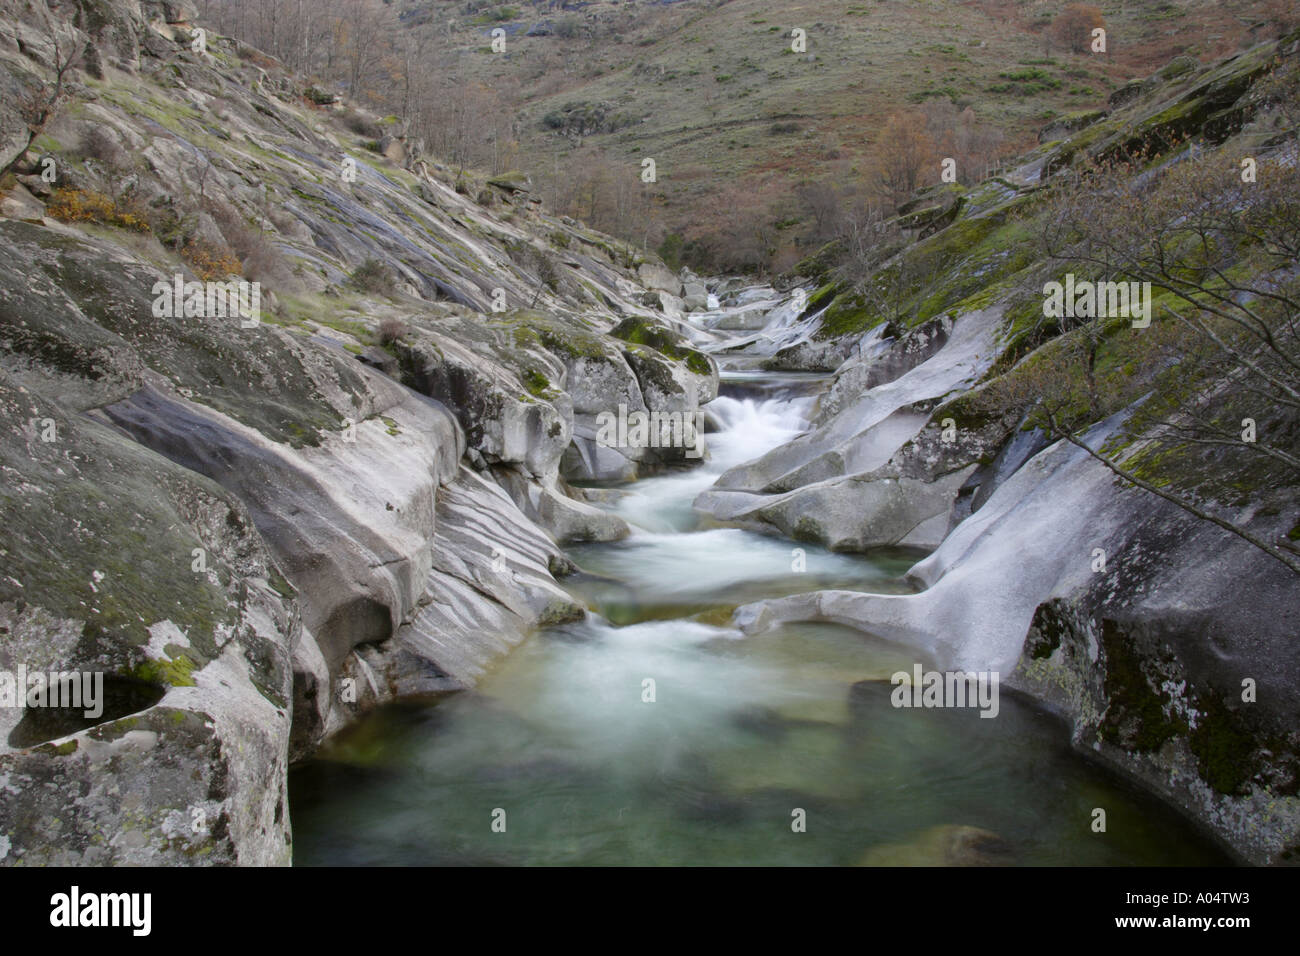 Fast flowing water over rocks in reserva natural de la garganta de los infiernos extremadura spain Stock Photo